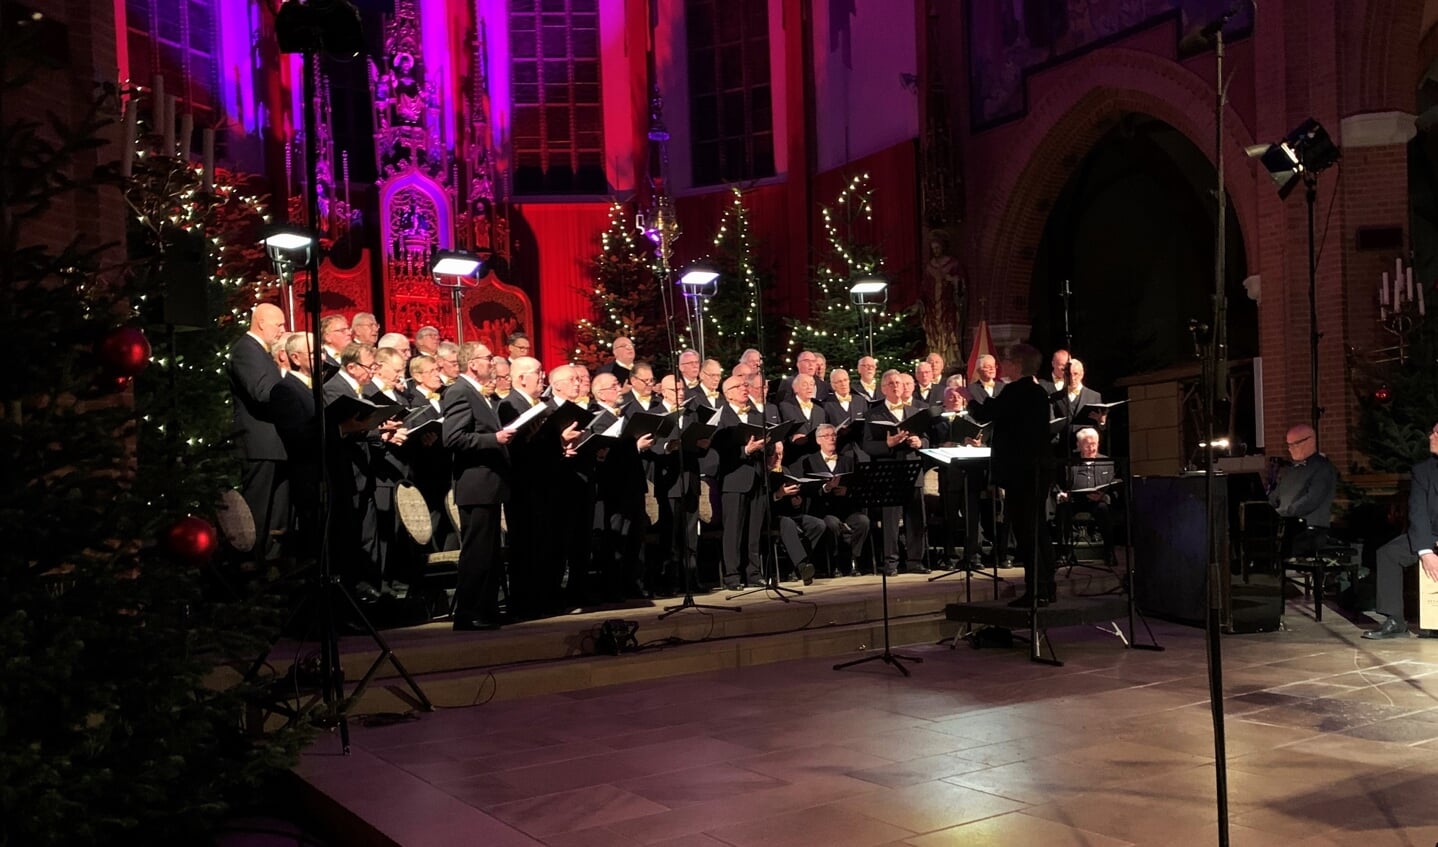 De jubilerende zangvereniging Inter Nos tijdens het Jubileum Kerstconcert. Foto: Theo Huijskes